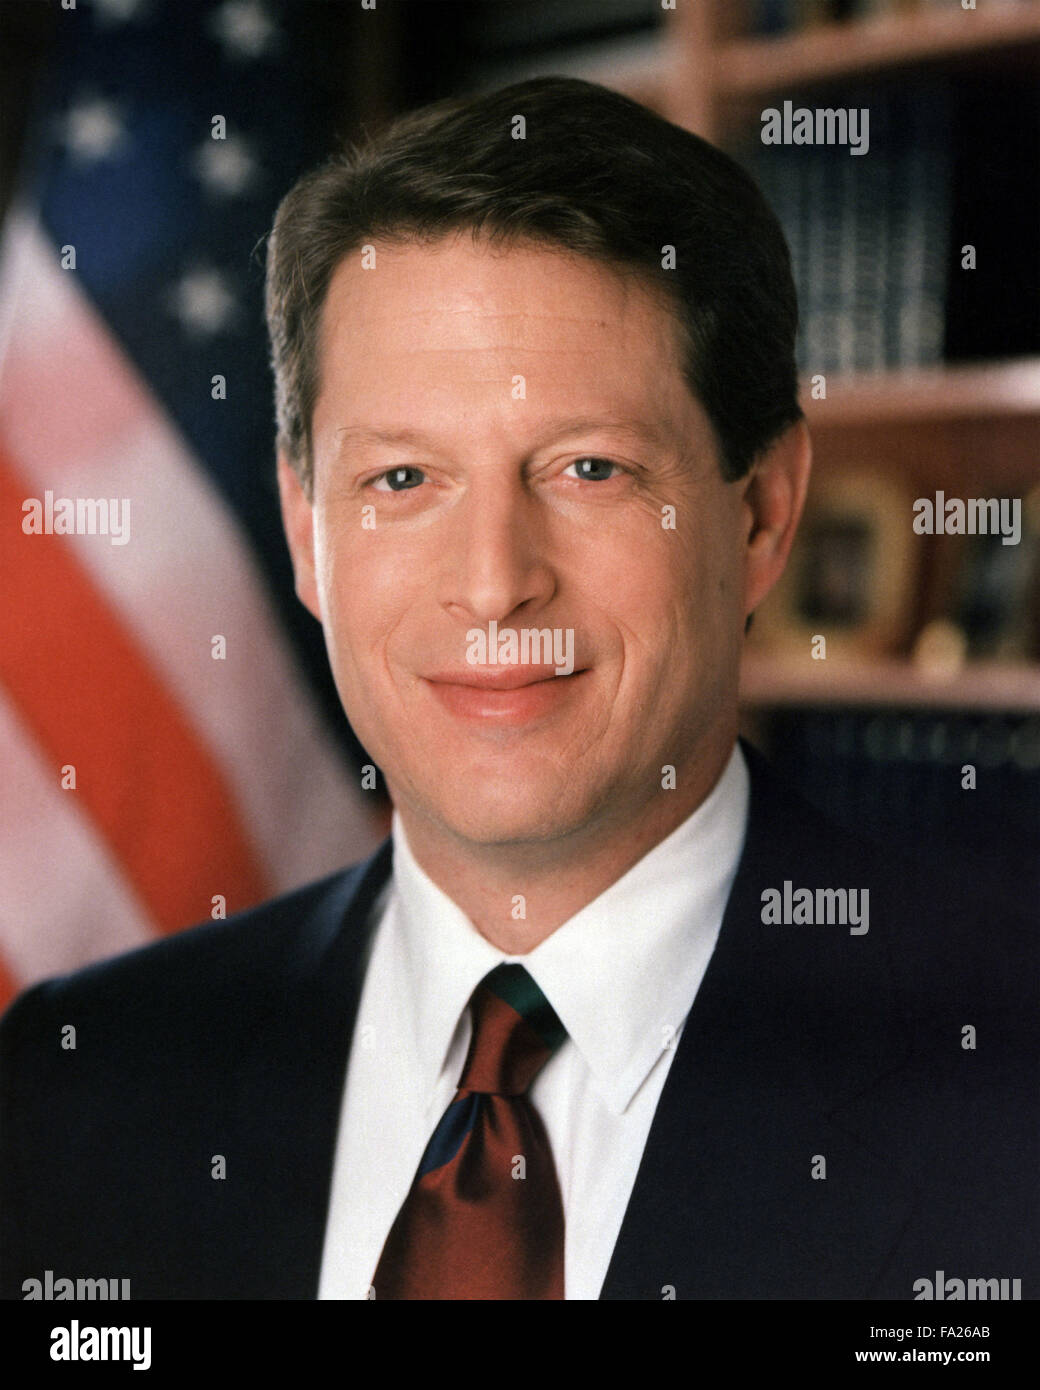 Al Gore, Albert Arnold "Al" Gore Jr. americano y ambientalista que fue el 45º Vicepresidente de los Estados Unidos desde 1993 a 2001 Foto de stock